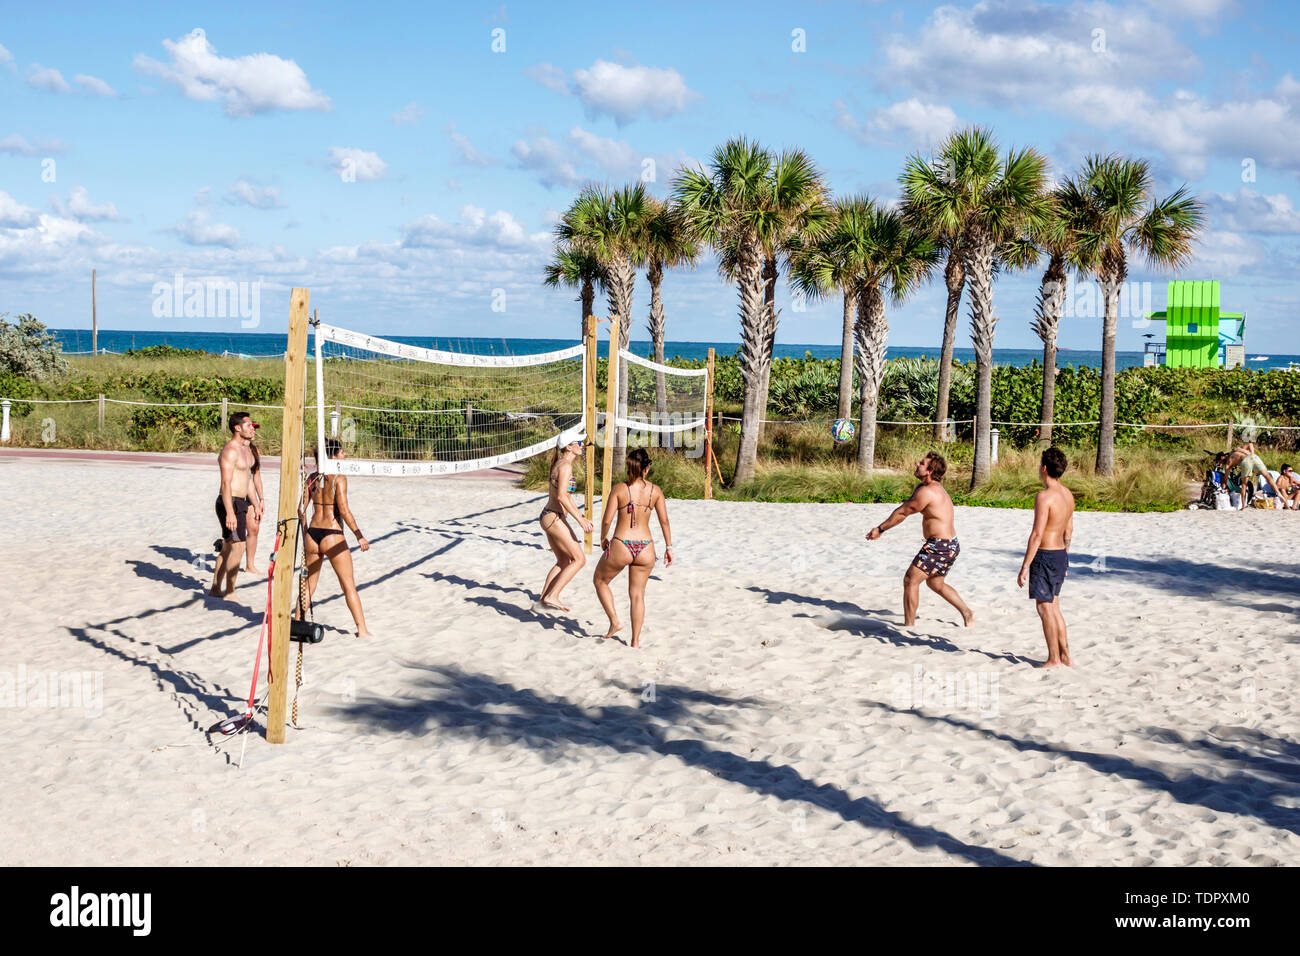 Miami Beach Florida,North Beach,campo da Beach volley,sabbia,uomo da gioco,donna femminile,giovane adulto,costume da bagno,bikini,immagine del corpo,FL190104063 Foto Stock